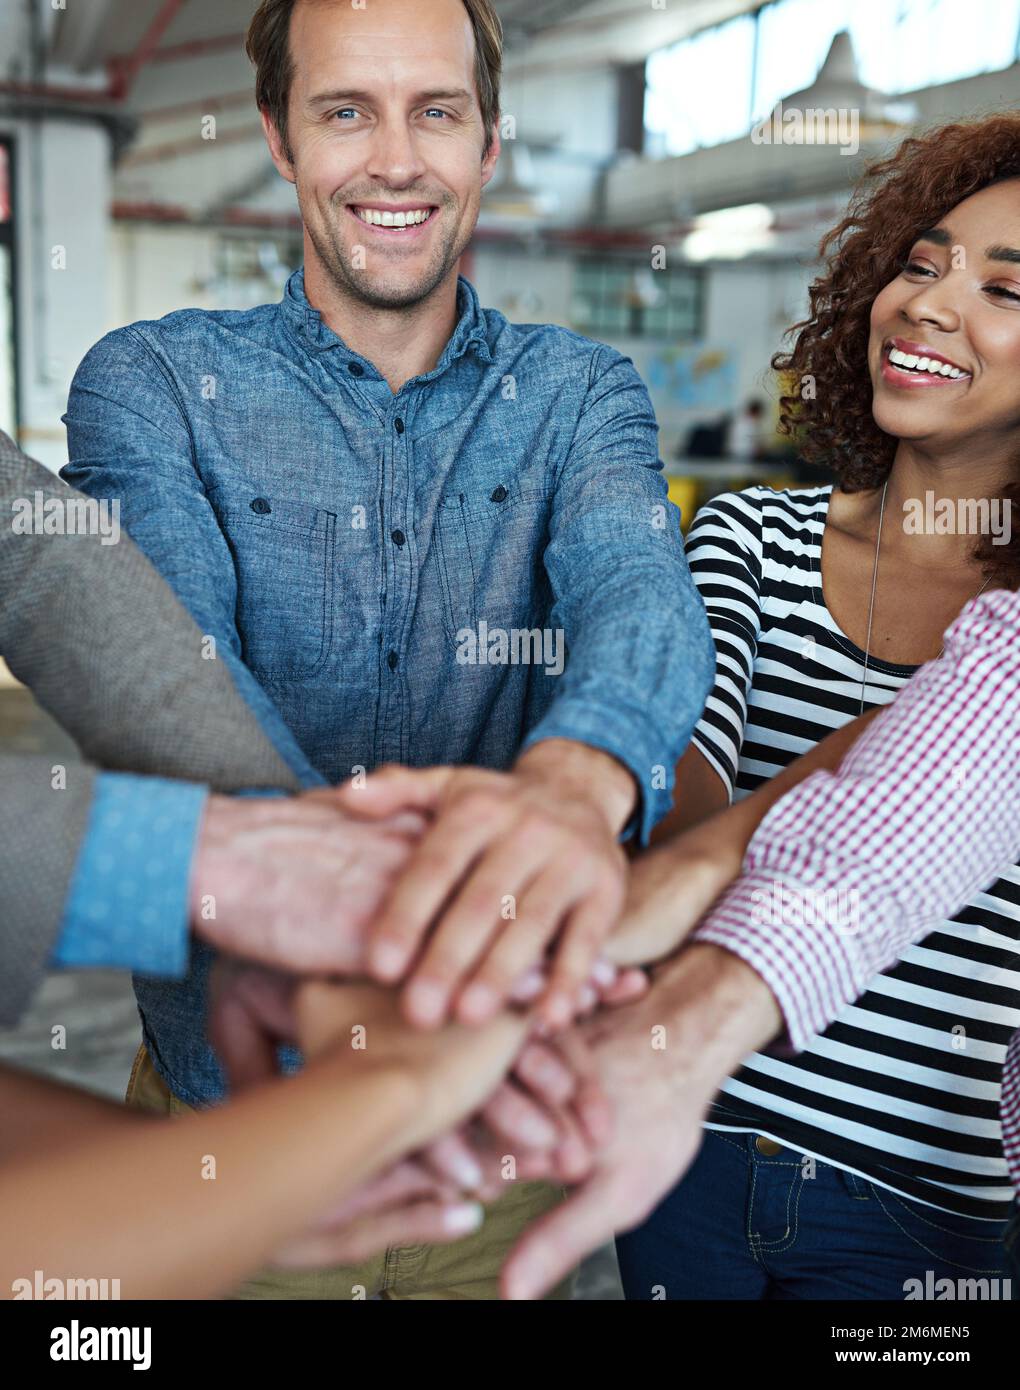 Wir können als Team alles tun. Die Mitarbeiter sind Hand in Hand in einem Ausdruck von Einheit und Teamgeist. Stockfoto